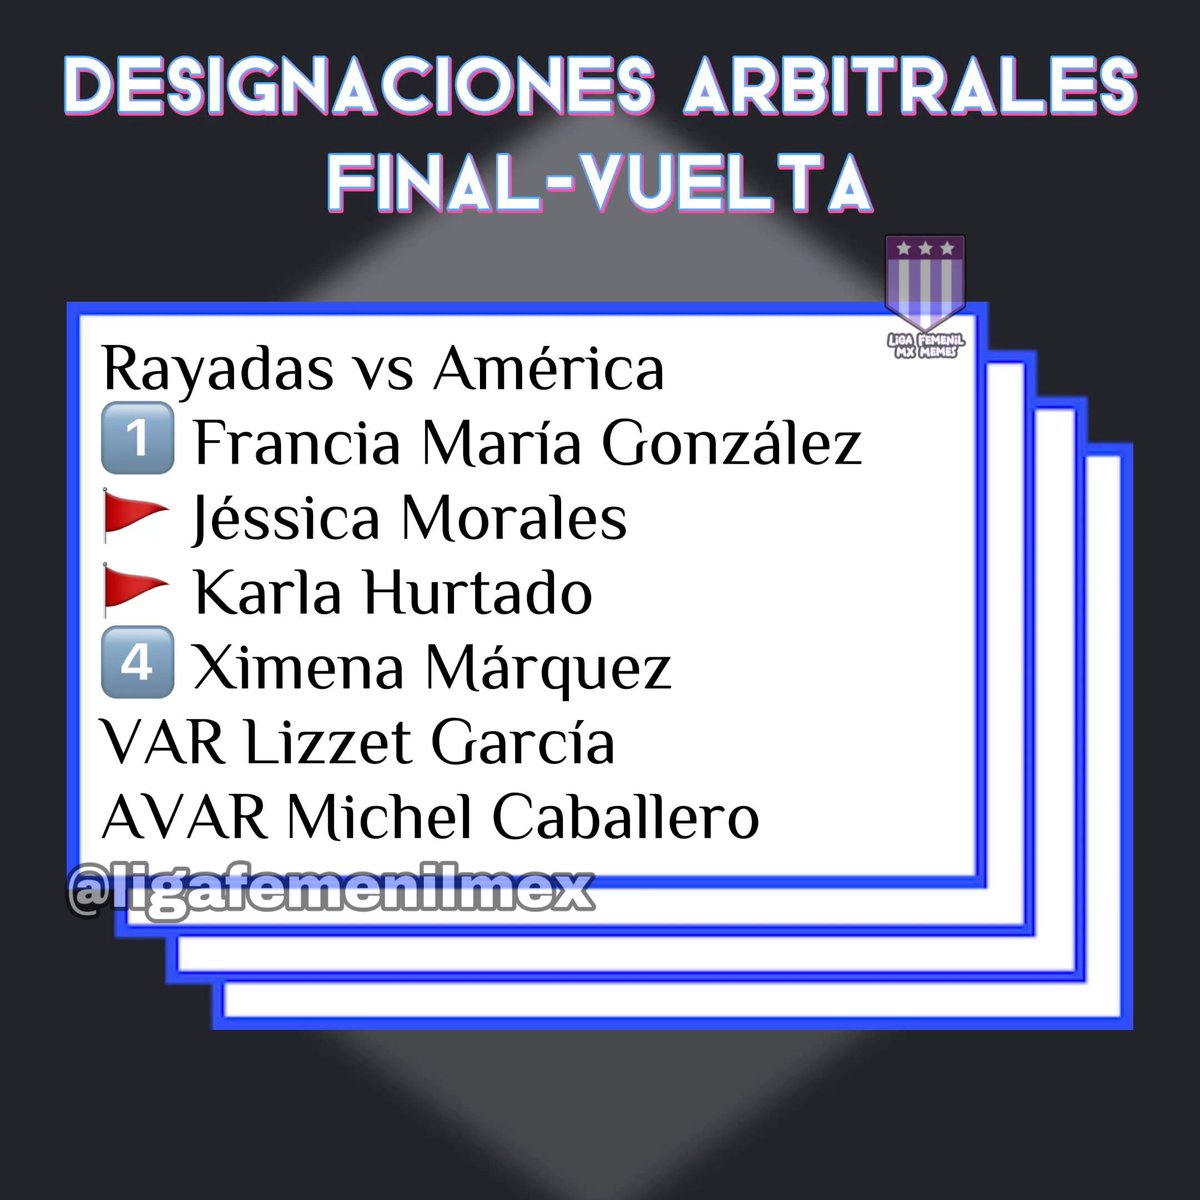 Les compartimos las designaciones arbitrales para la vuelta de la gran final 🥸
#LigaBBVAMXFemenil #VamosPorEllas #FútbolFemenino